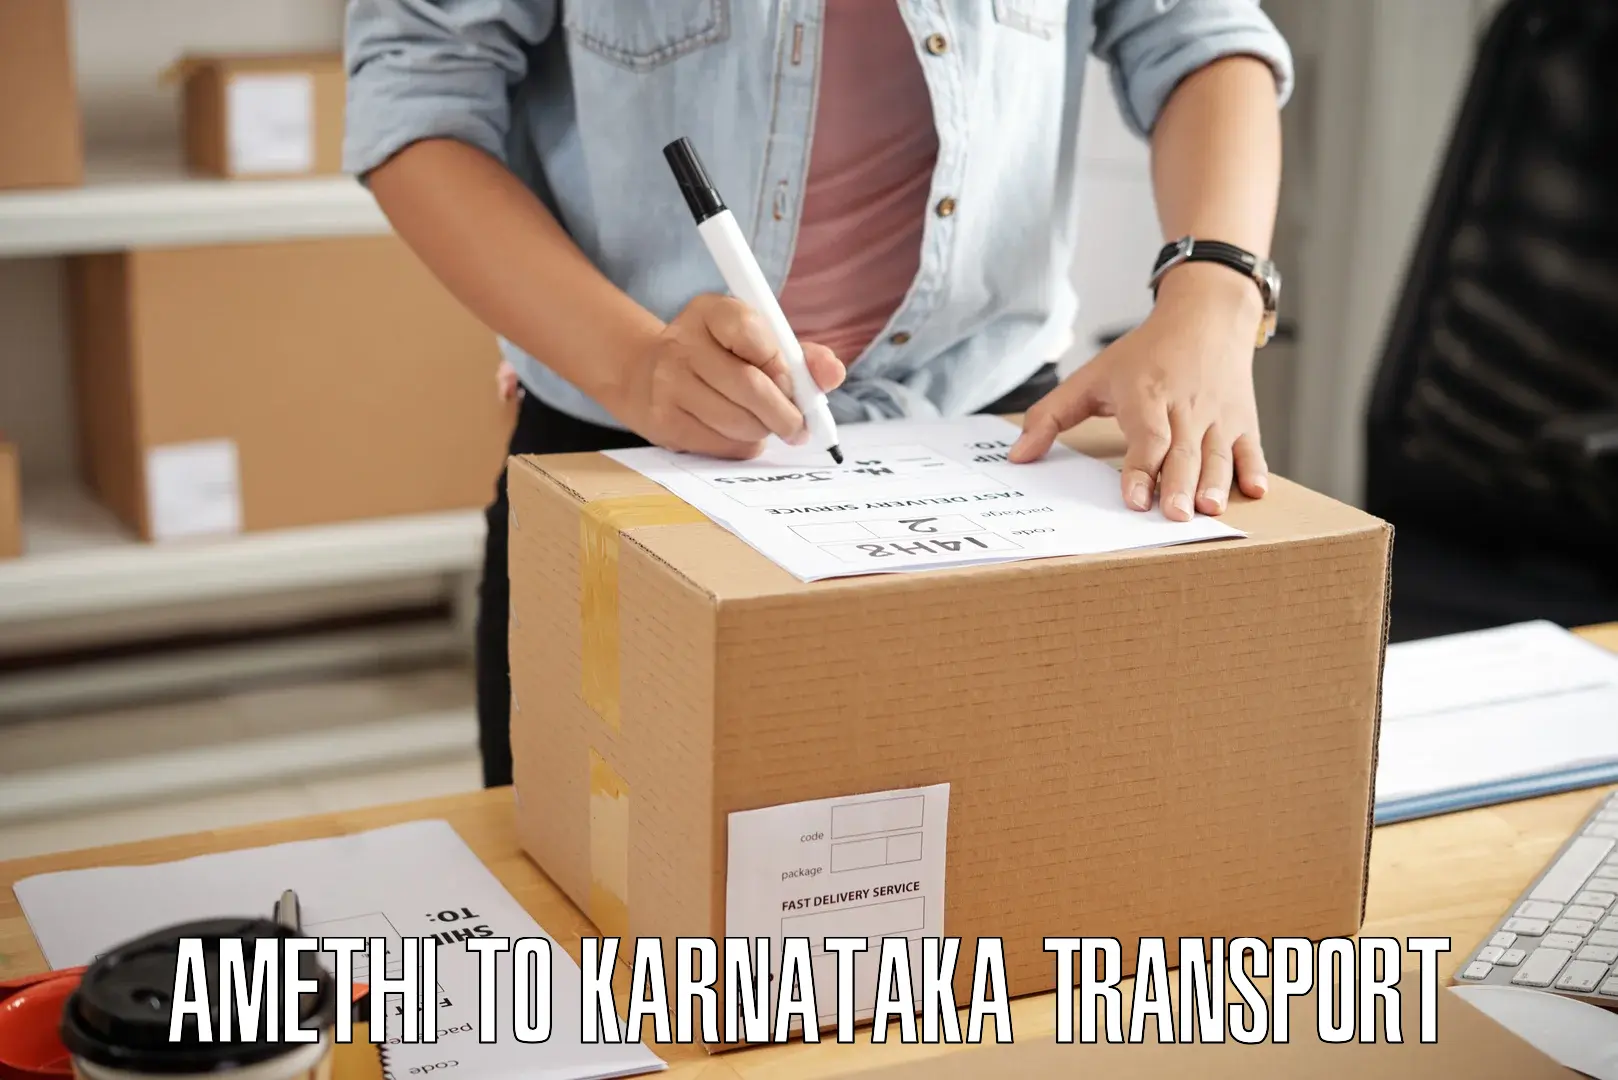 Interstate transport services Amethi to Karnataka